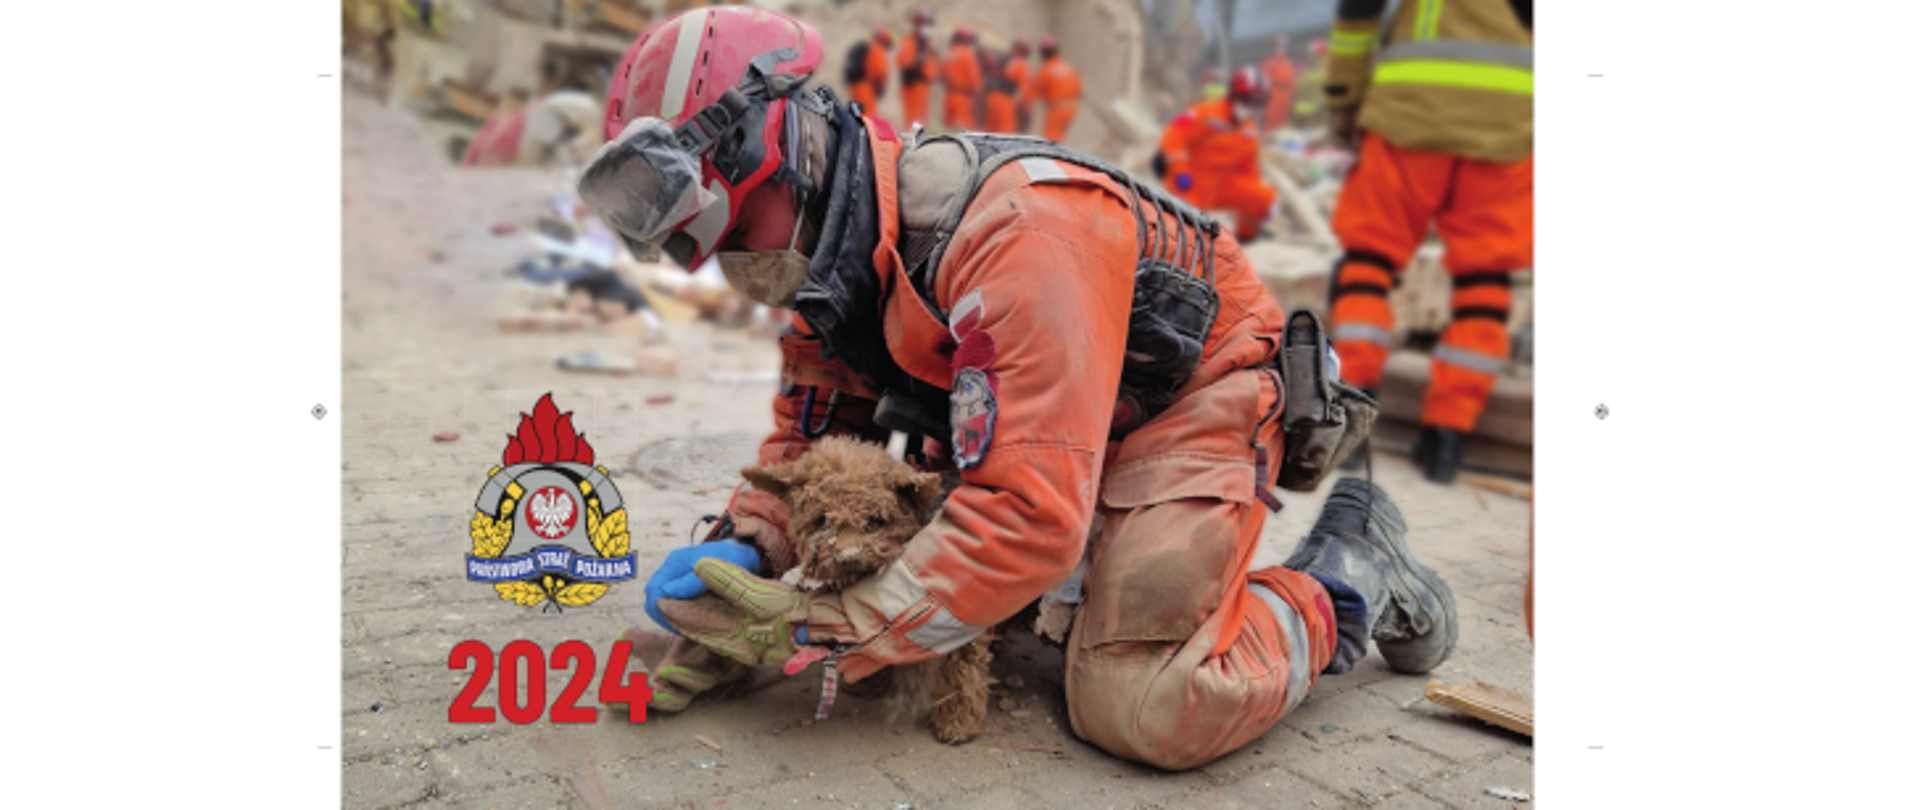 strażak trzyma uratowanego psa, w lewym dolnym roku widoczne logo psp i cyfry 2024